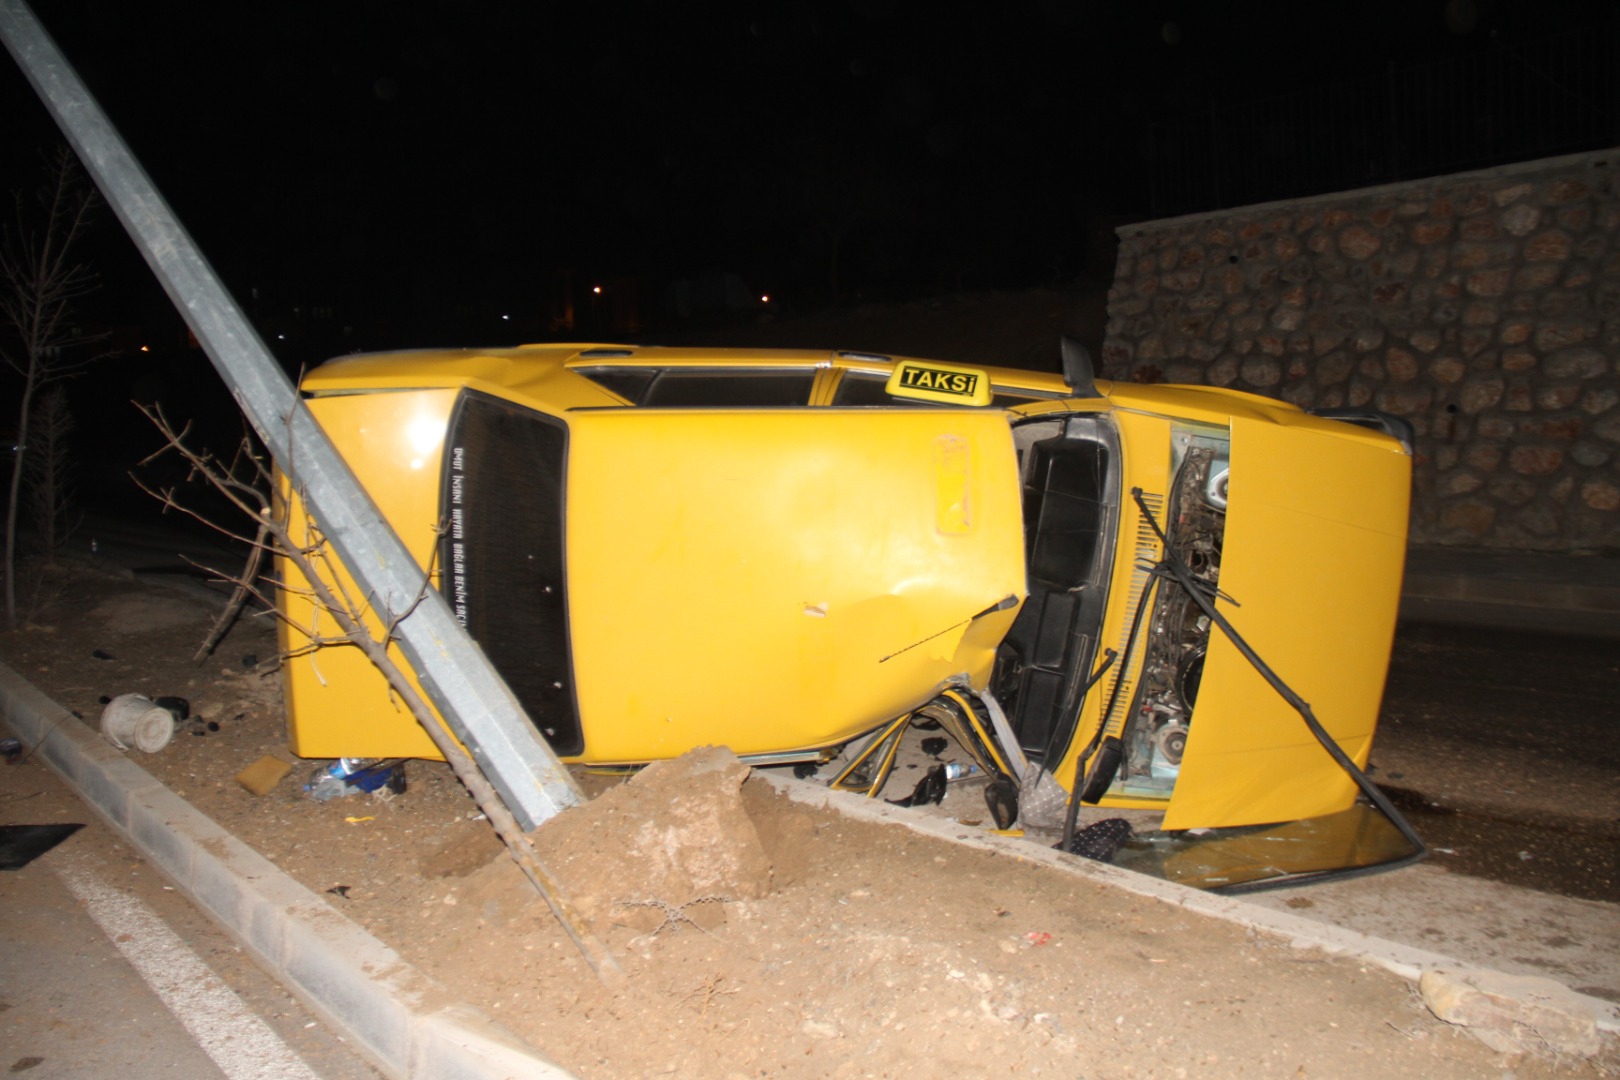 Elazığ’da aydınlatma direğine çarpan otomobil yan yattı: 3 yaralı   